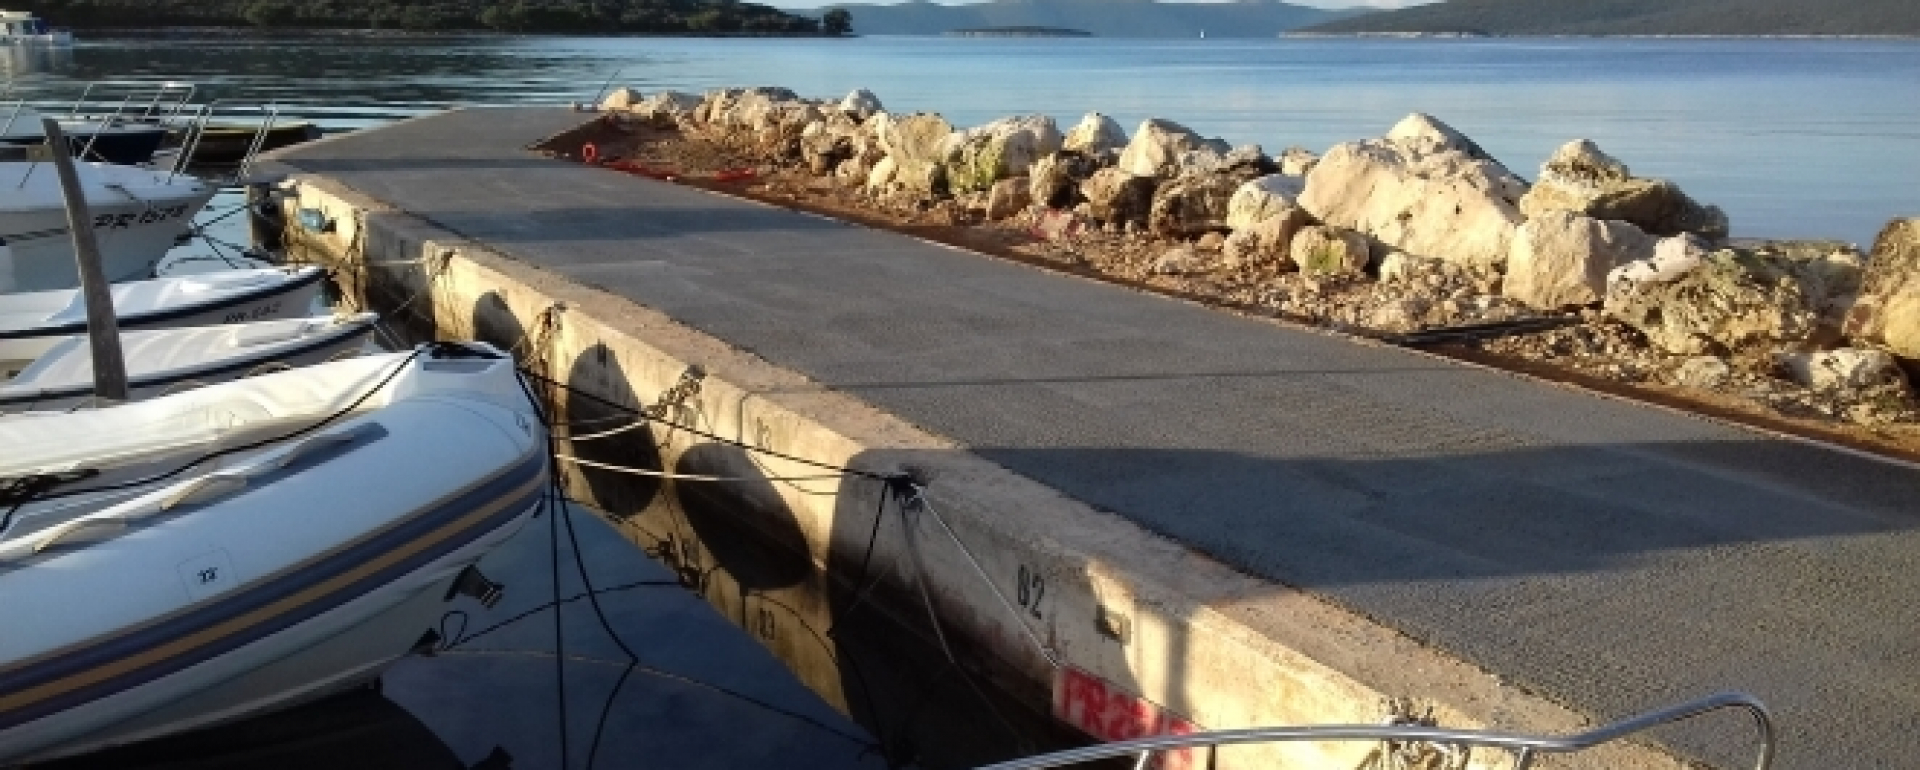 Završena sanacija valobrana u luci Muline - Stivon, otok Ugljan